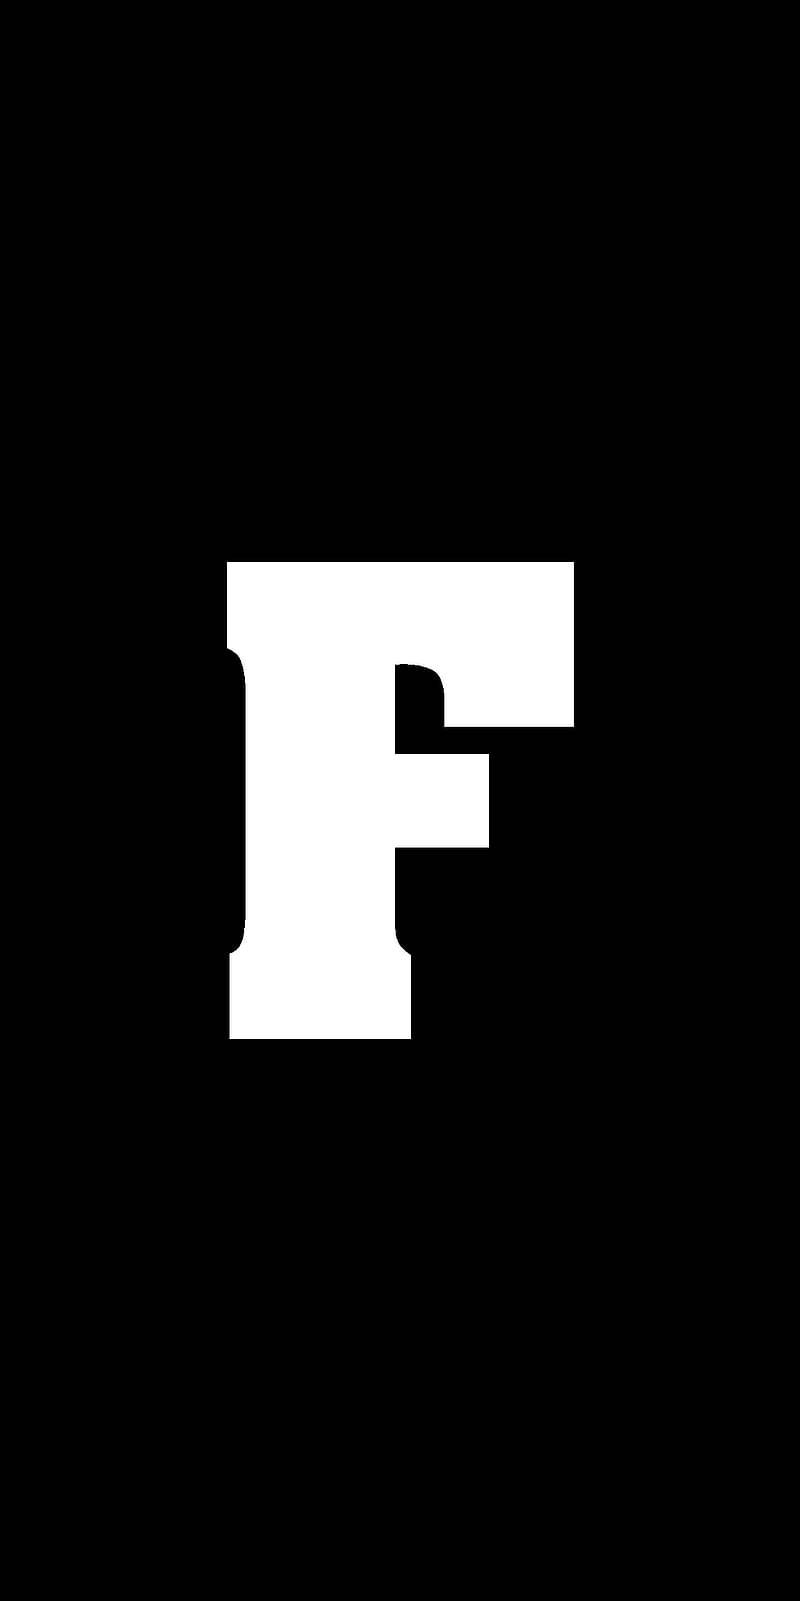 Monochrome Letter F Design